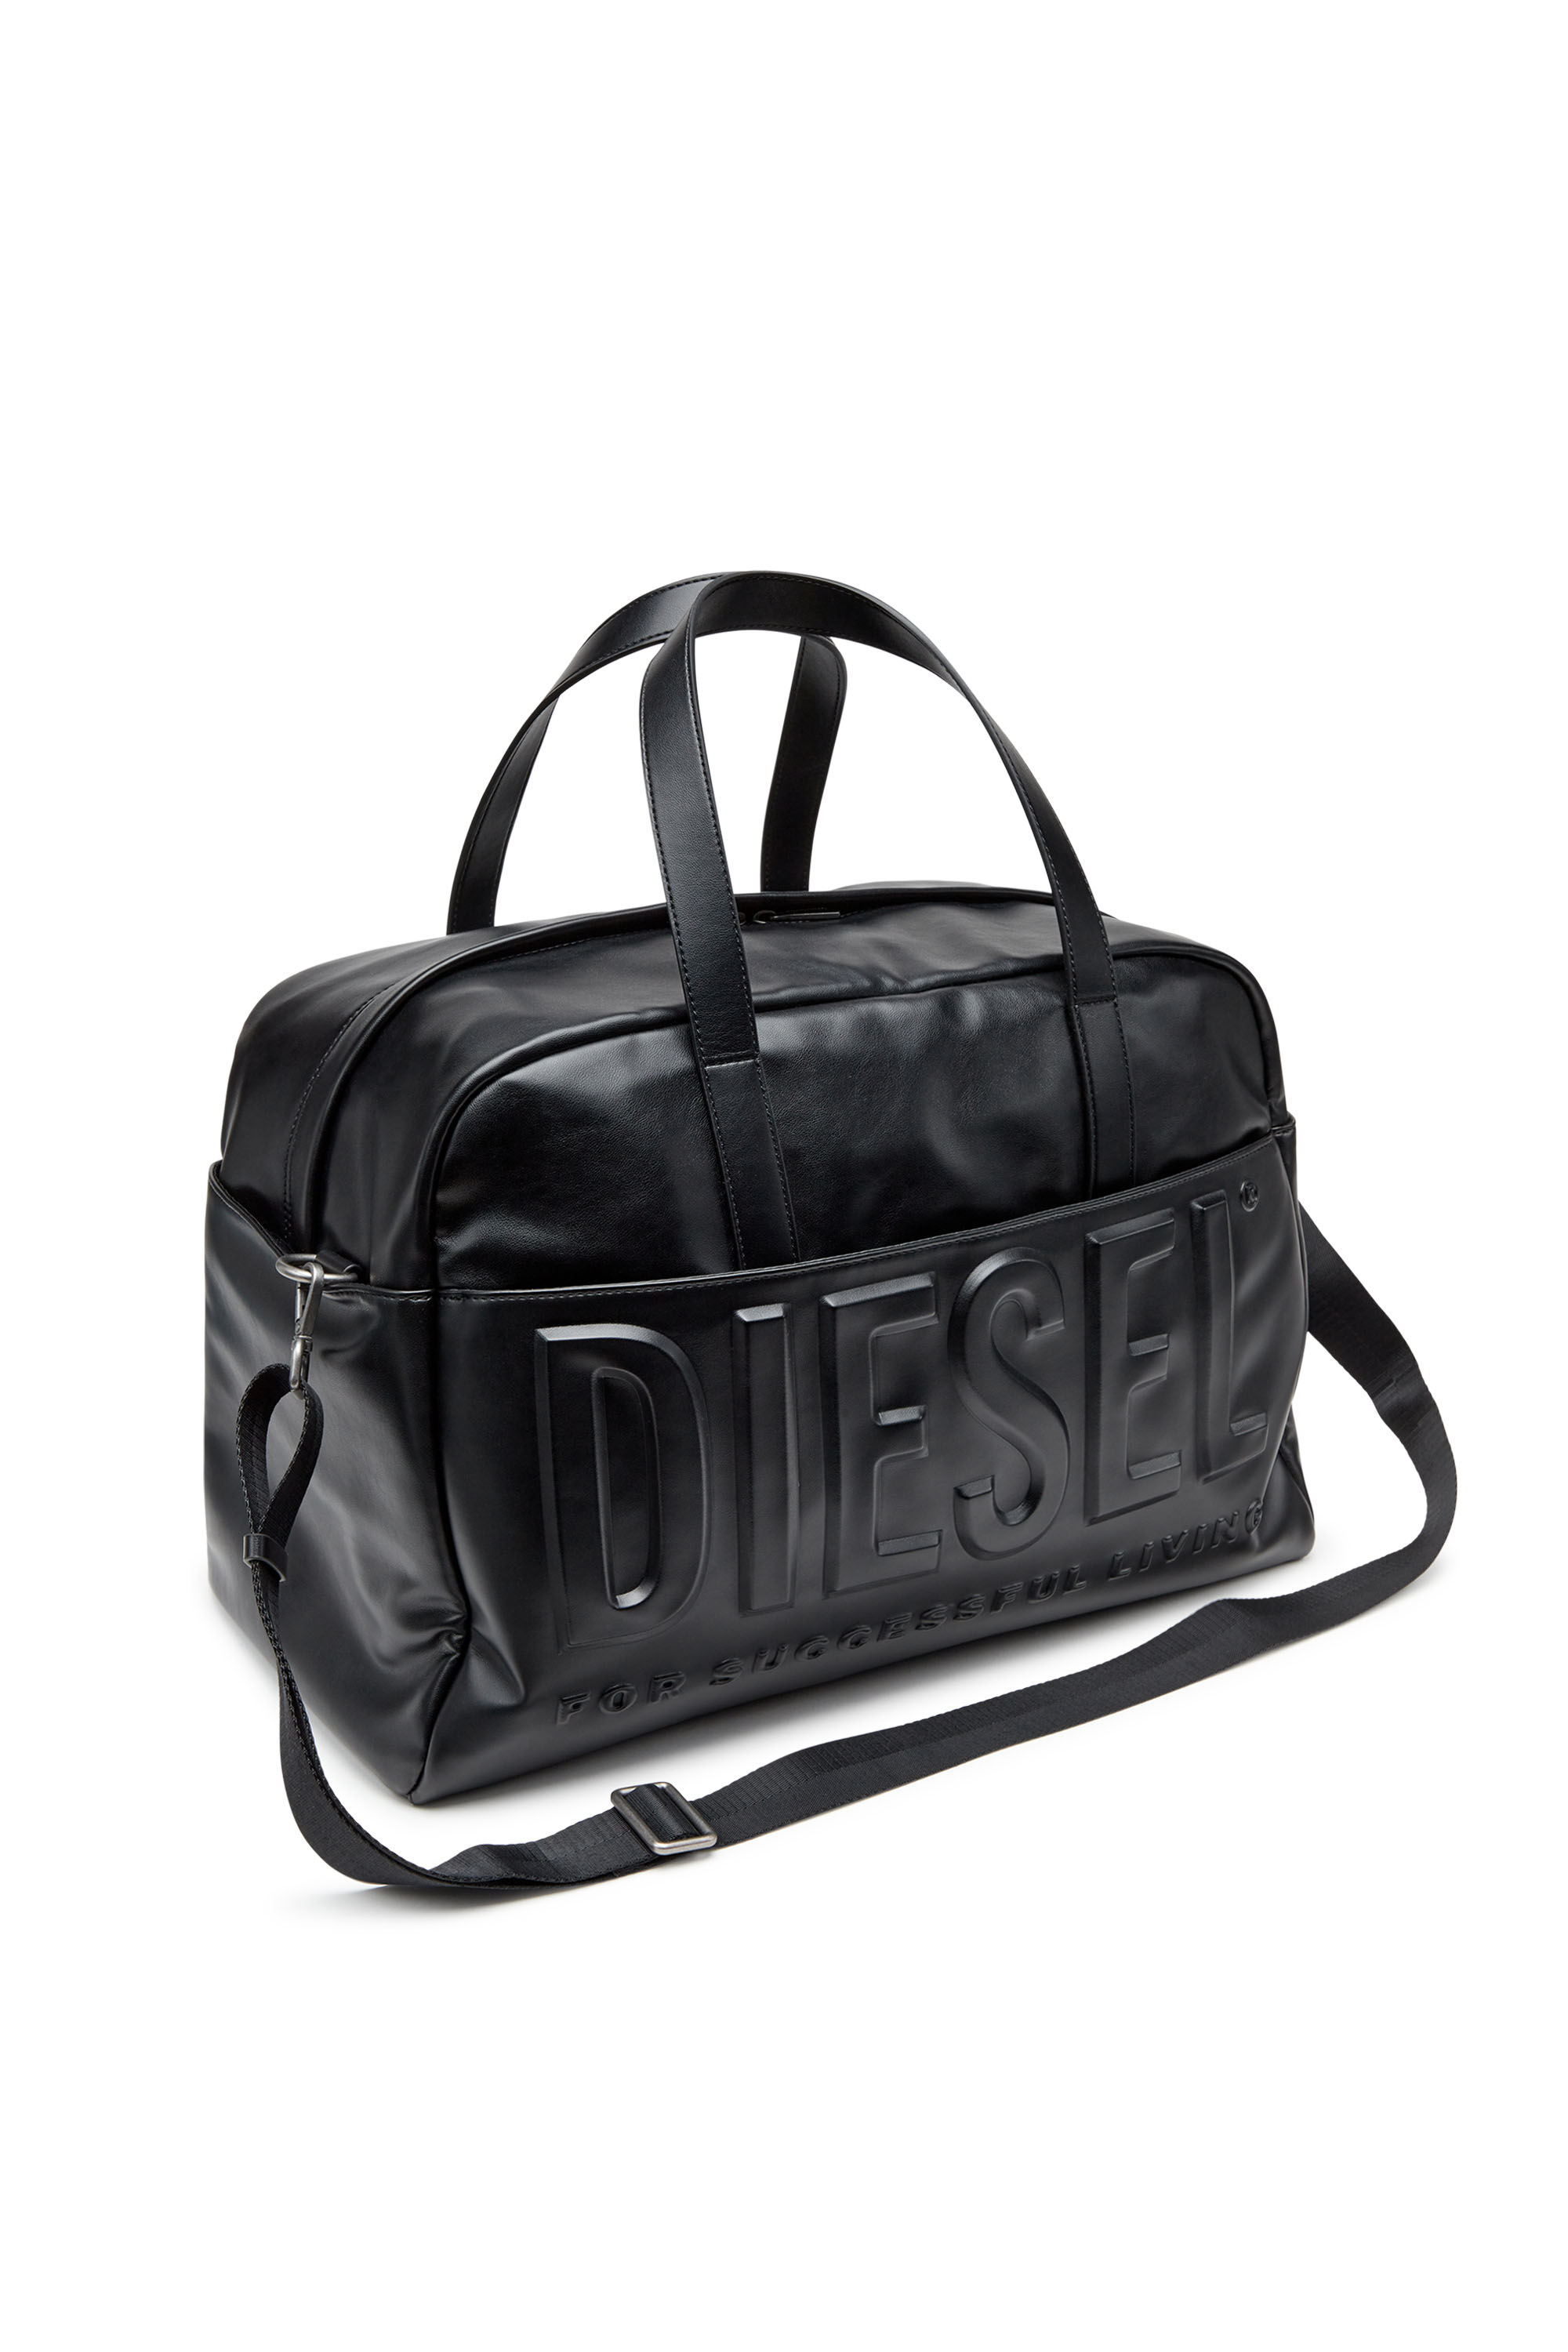 DSL 3D DUFFLE L X Dsl 3D Duffle L X Travel Bag - Duffle bag with